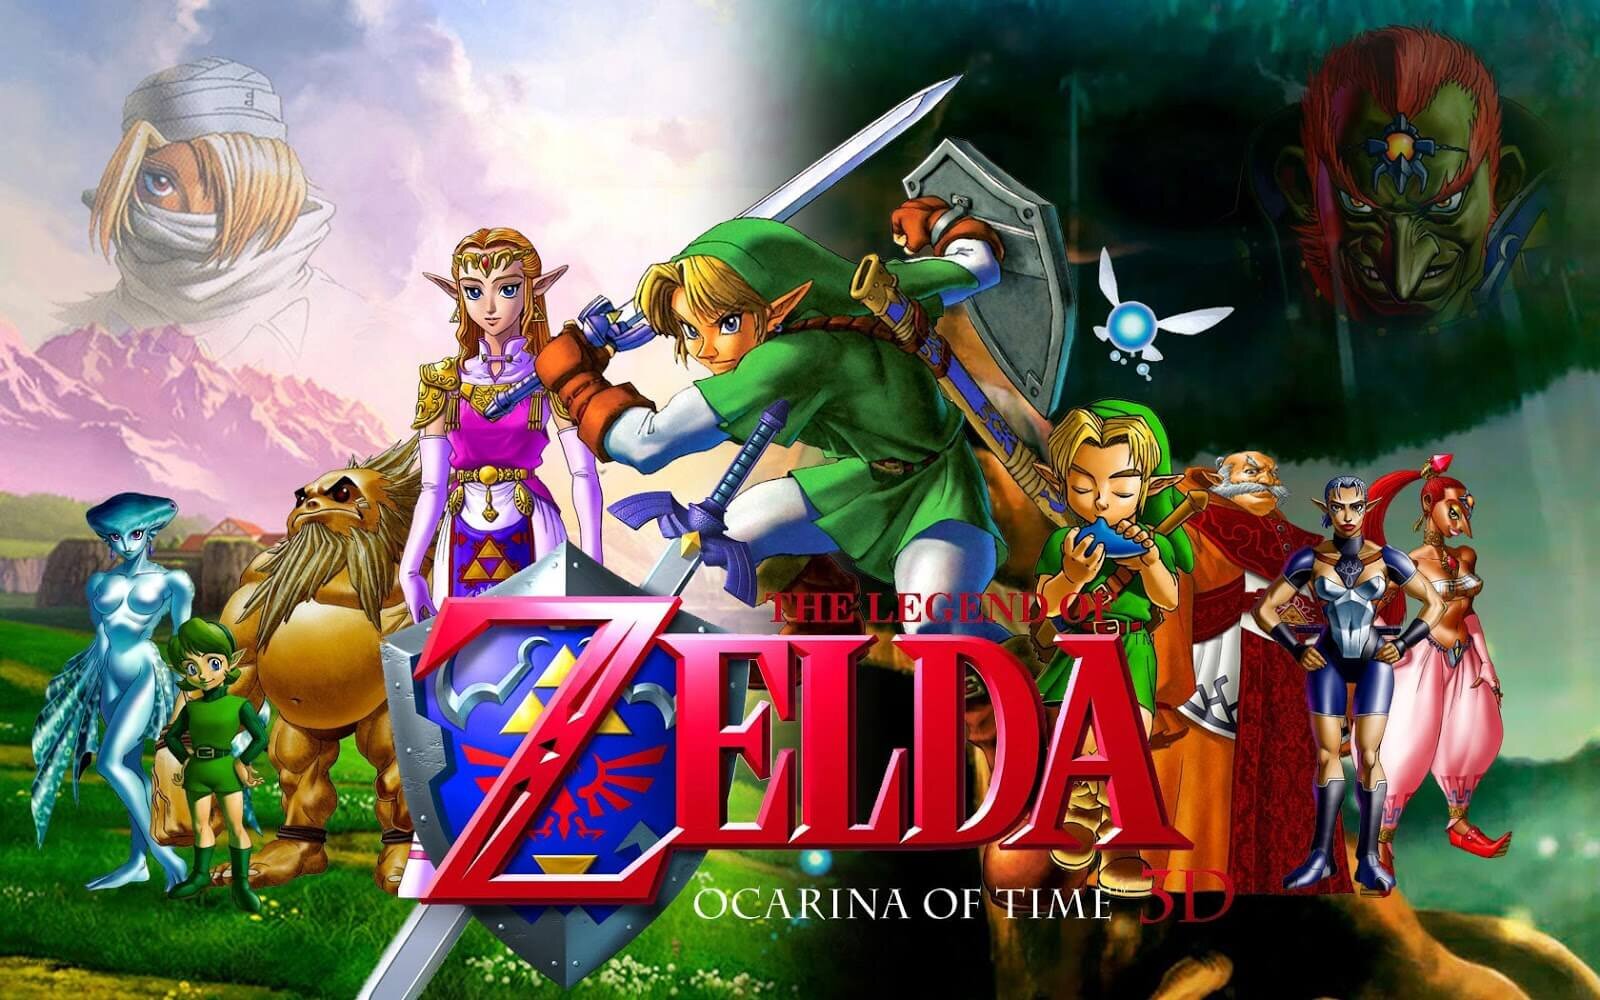 Best Zelda Games Based on Their Timeline